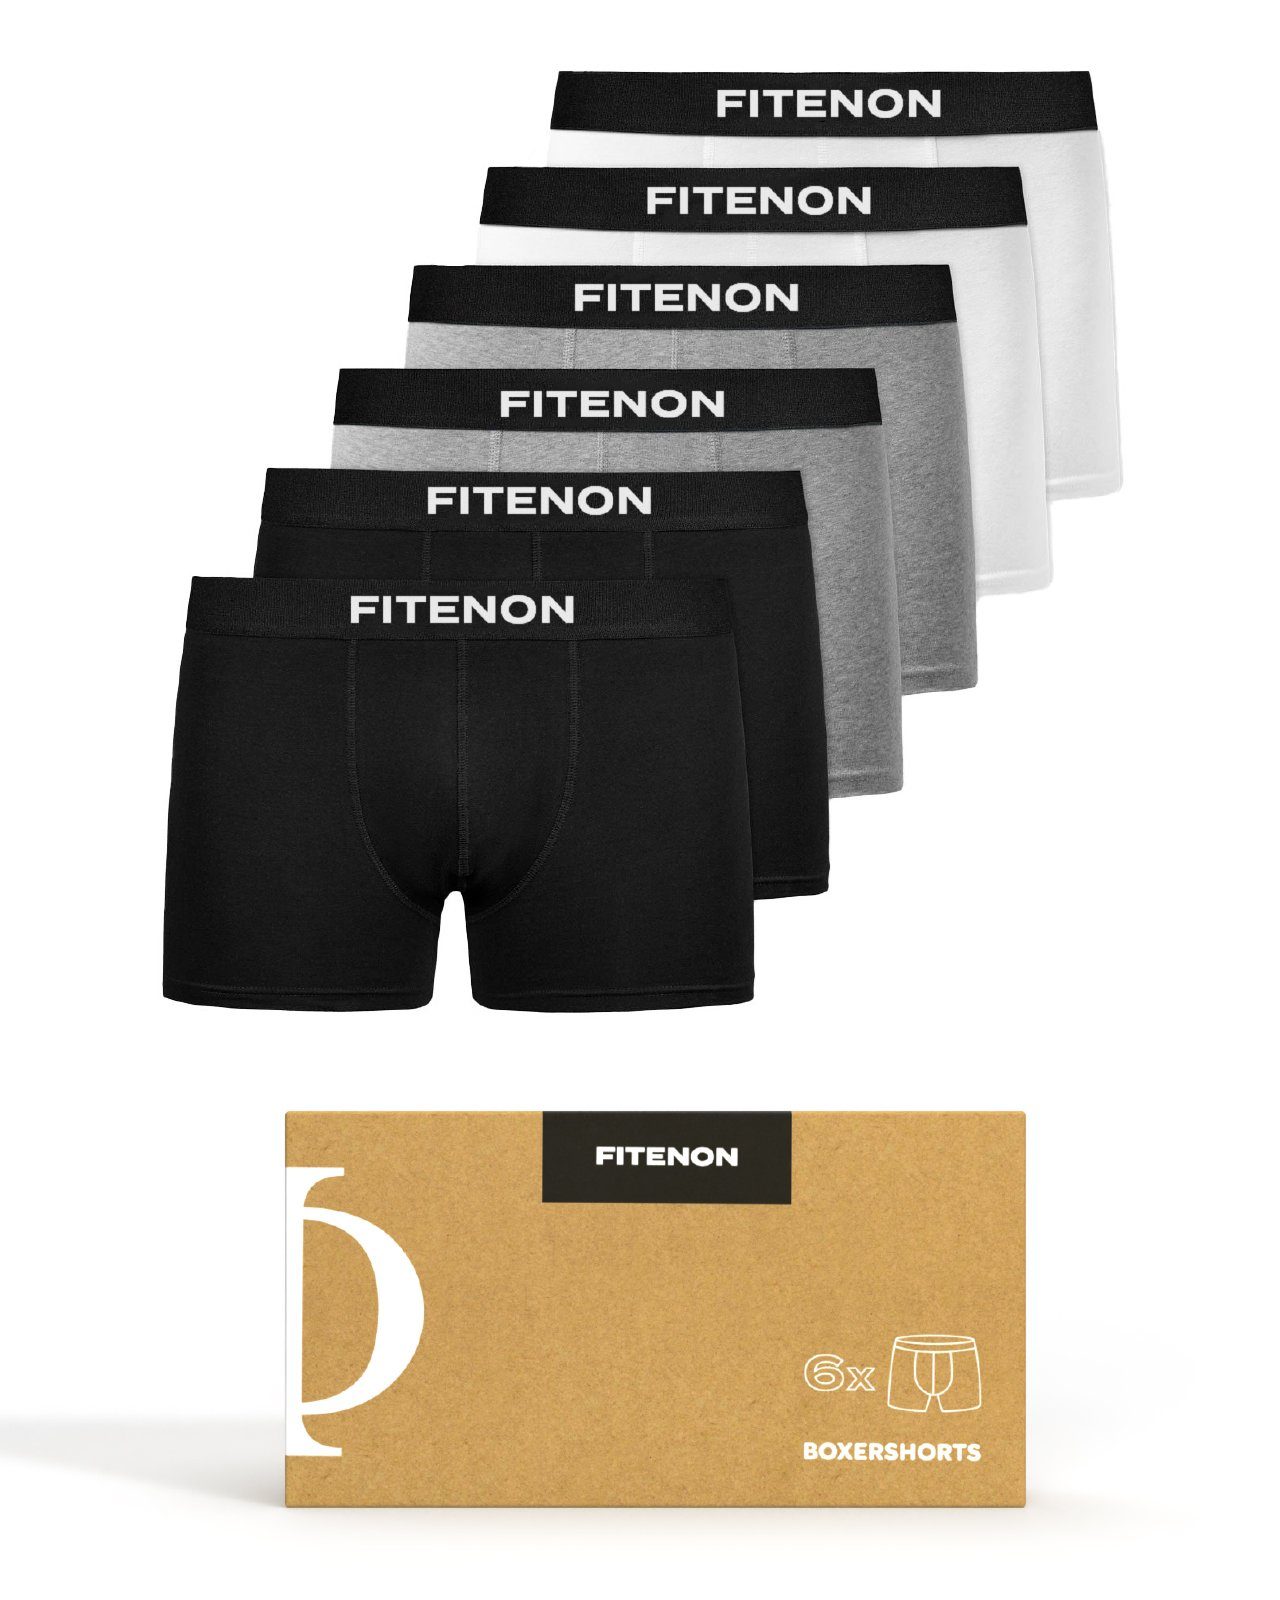 FITENON Boxershorts Herren Unterhosen, Unterwäsche, ohne kratzenden Zettel, Baumwolle (6 er Set) mit Logo-Elastikbund 2x Schwarz 2x Grau 2x Weiß